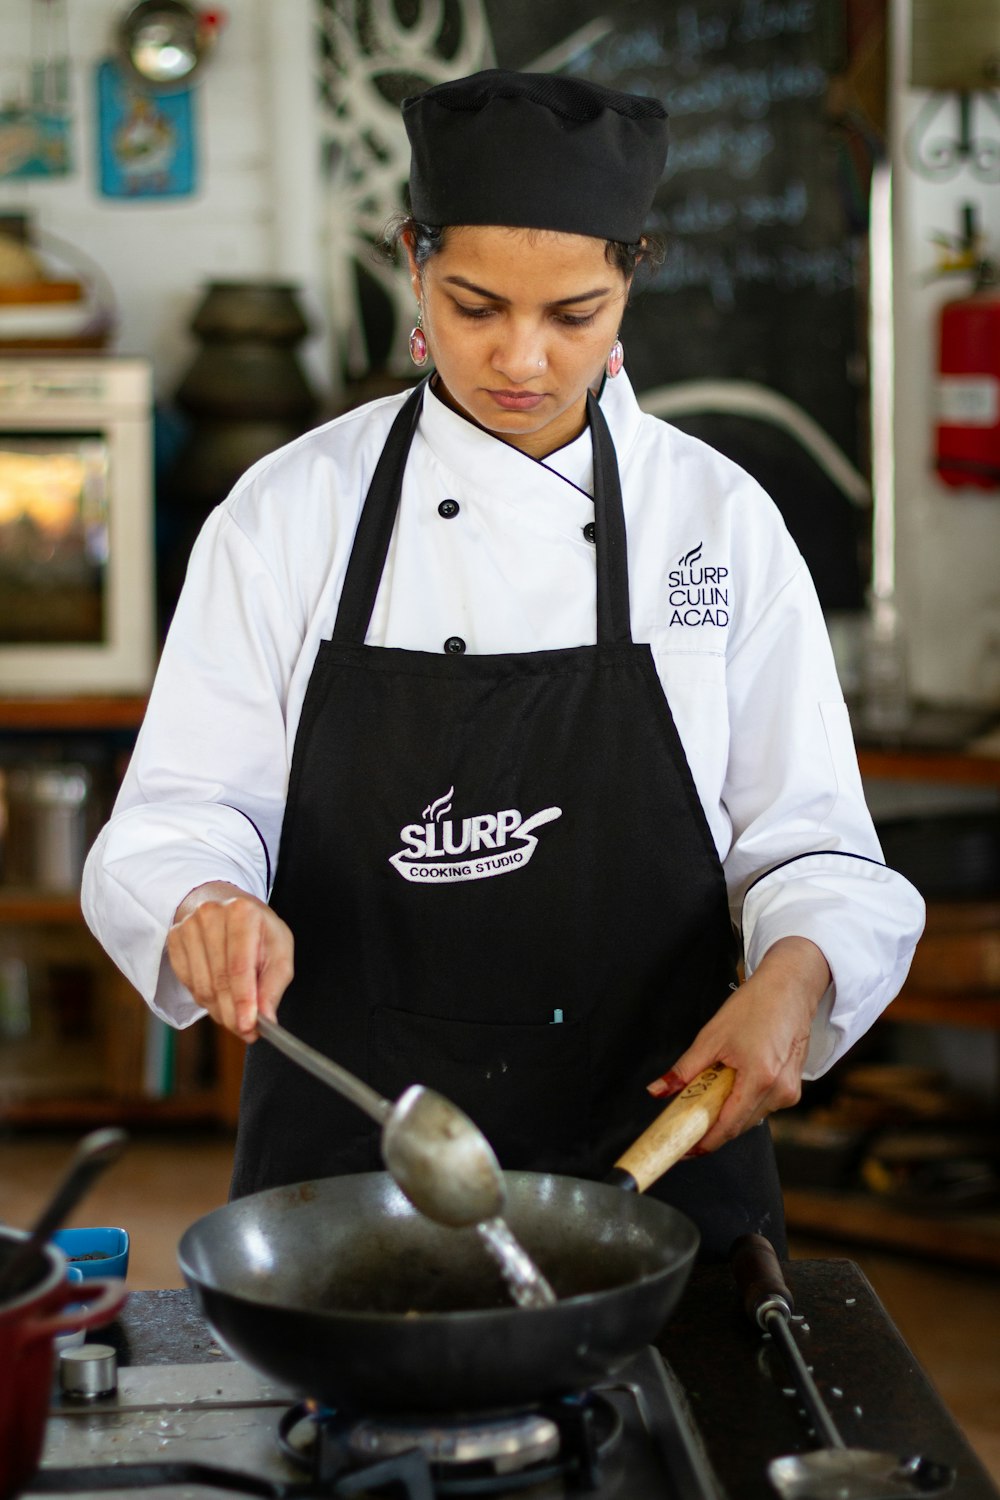 Una mujer con uniforme de chef cocinando comida en una estufa